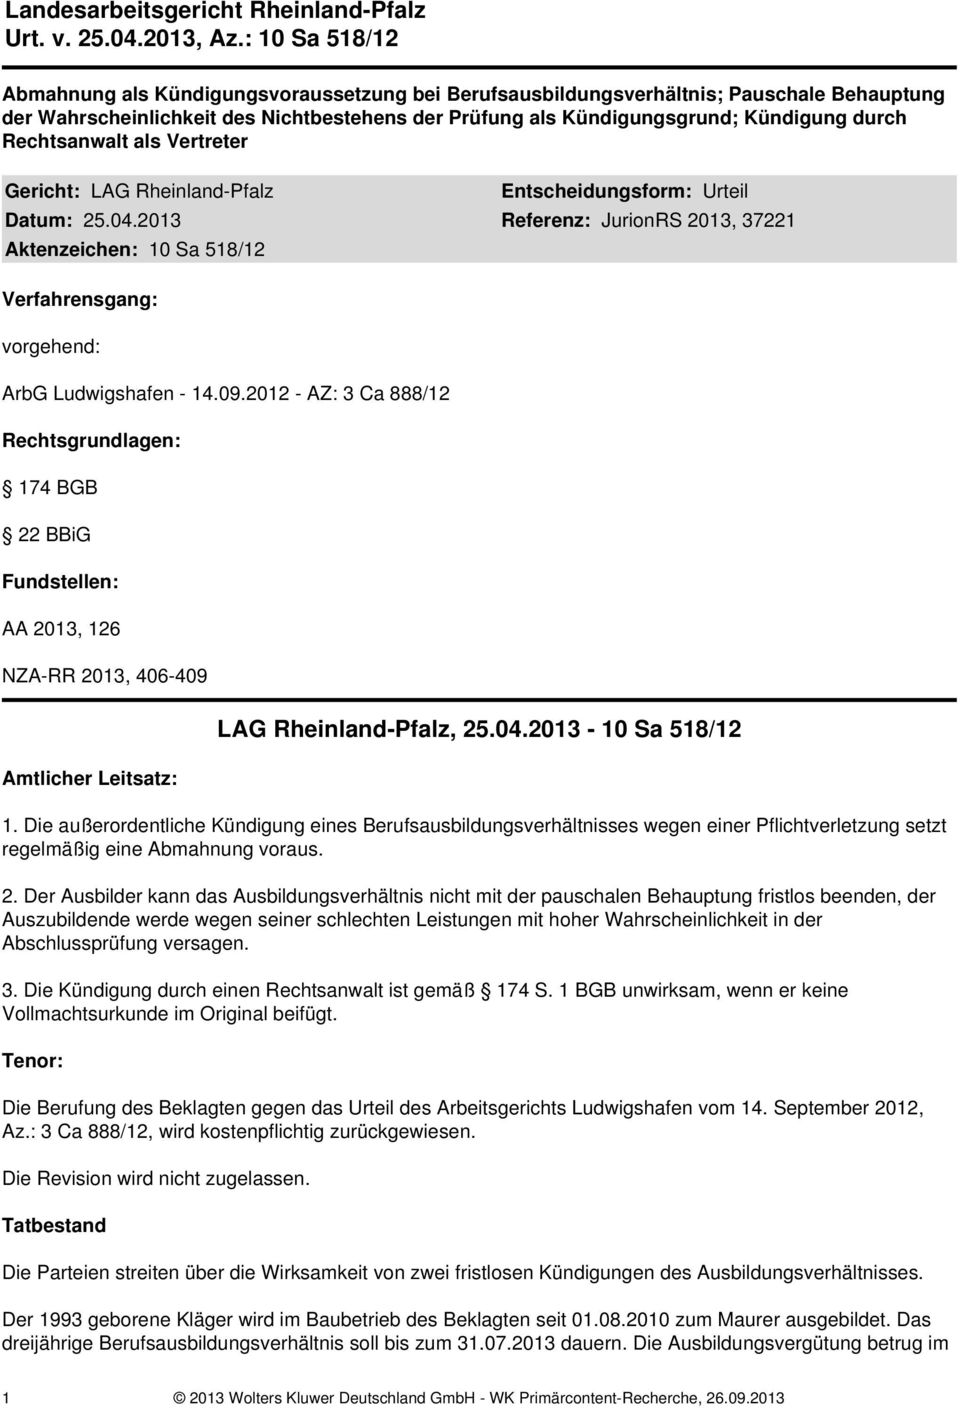 Rechtsanwalt als Vertreter Gericht: LAG Rheinland-Pfalz Entscheidungsform: Urteil Datum: 25.04.